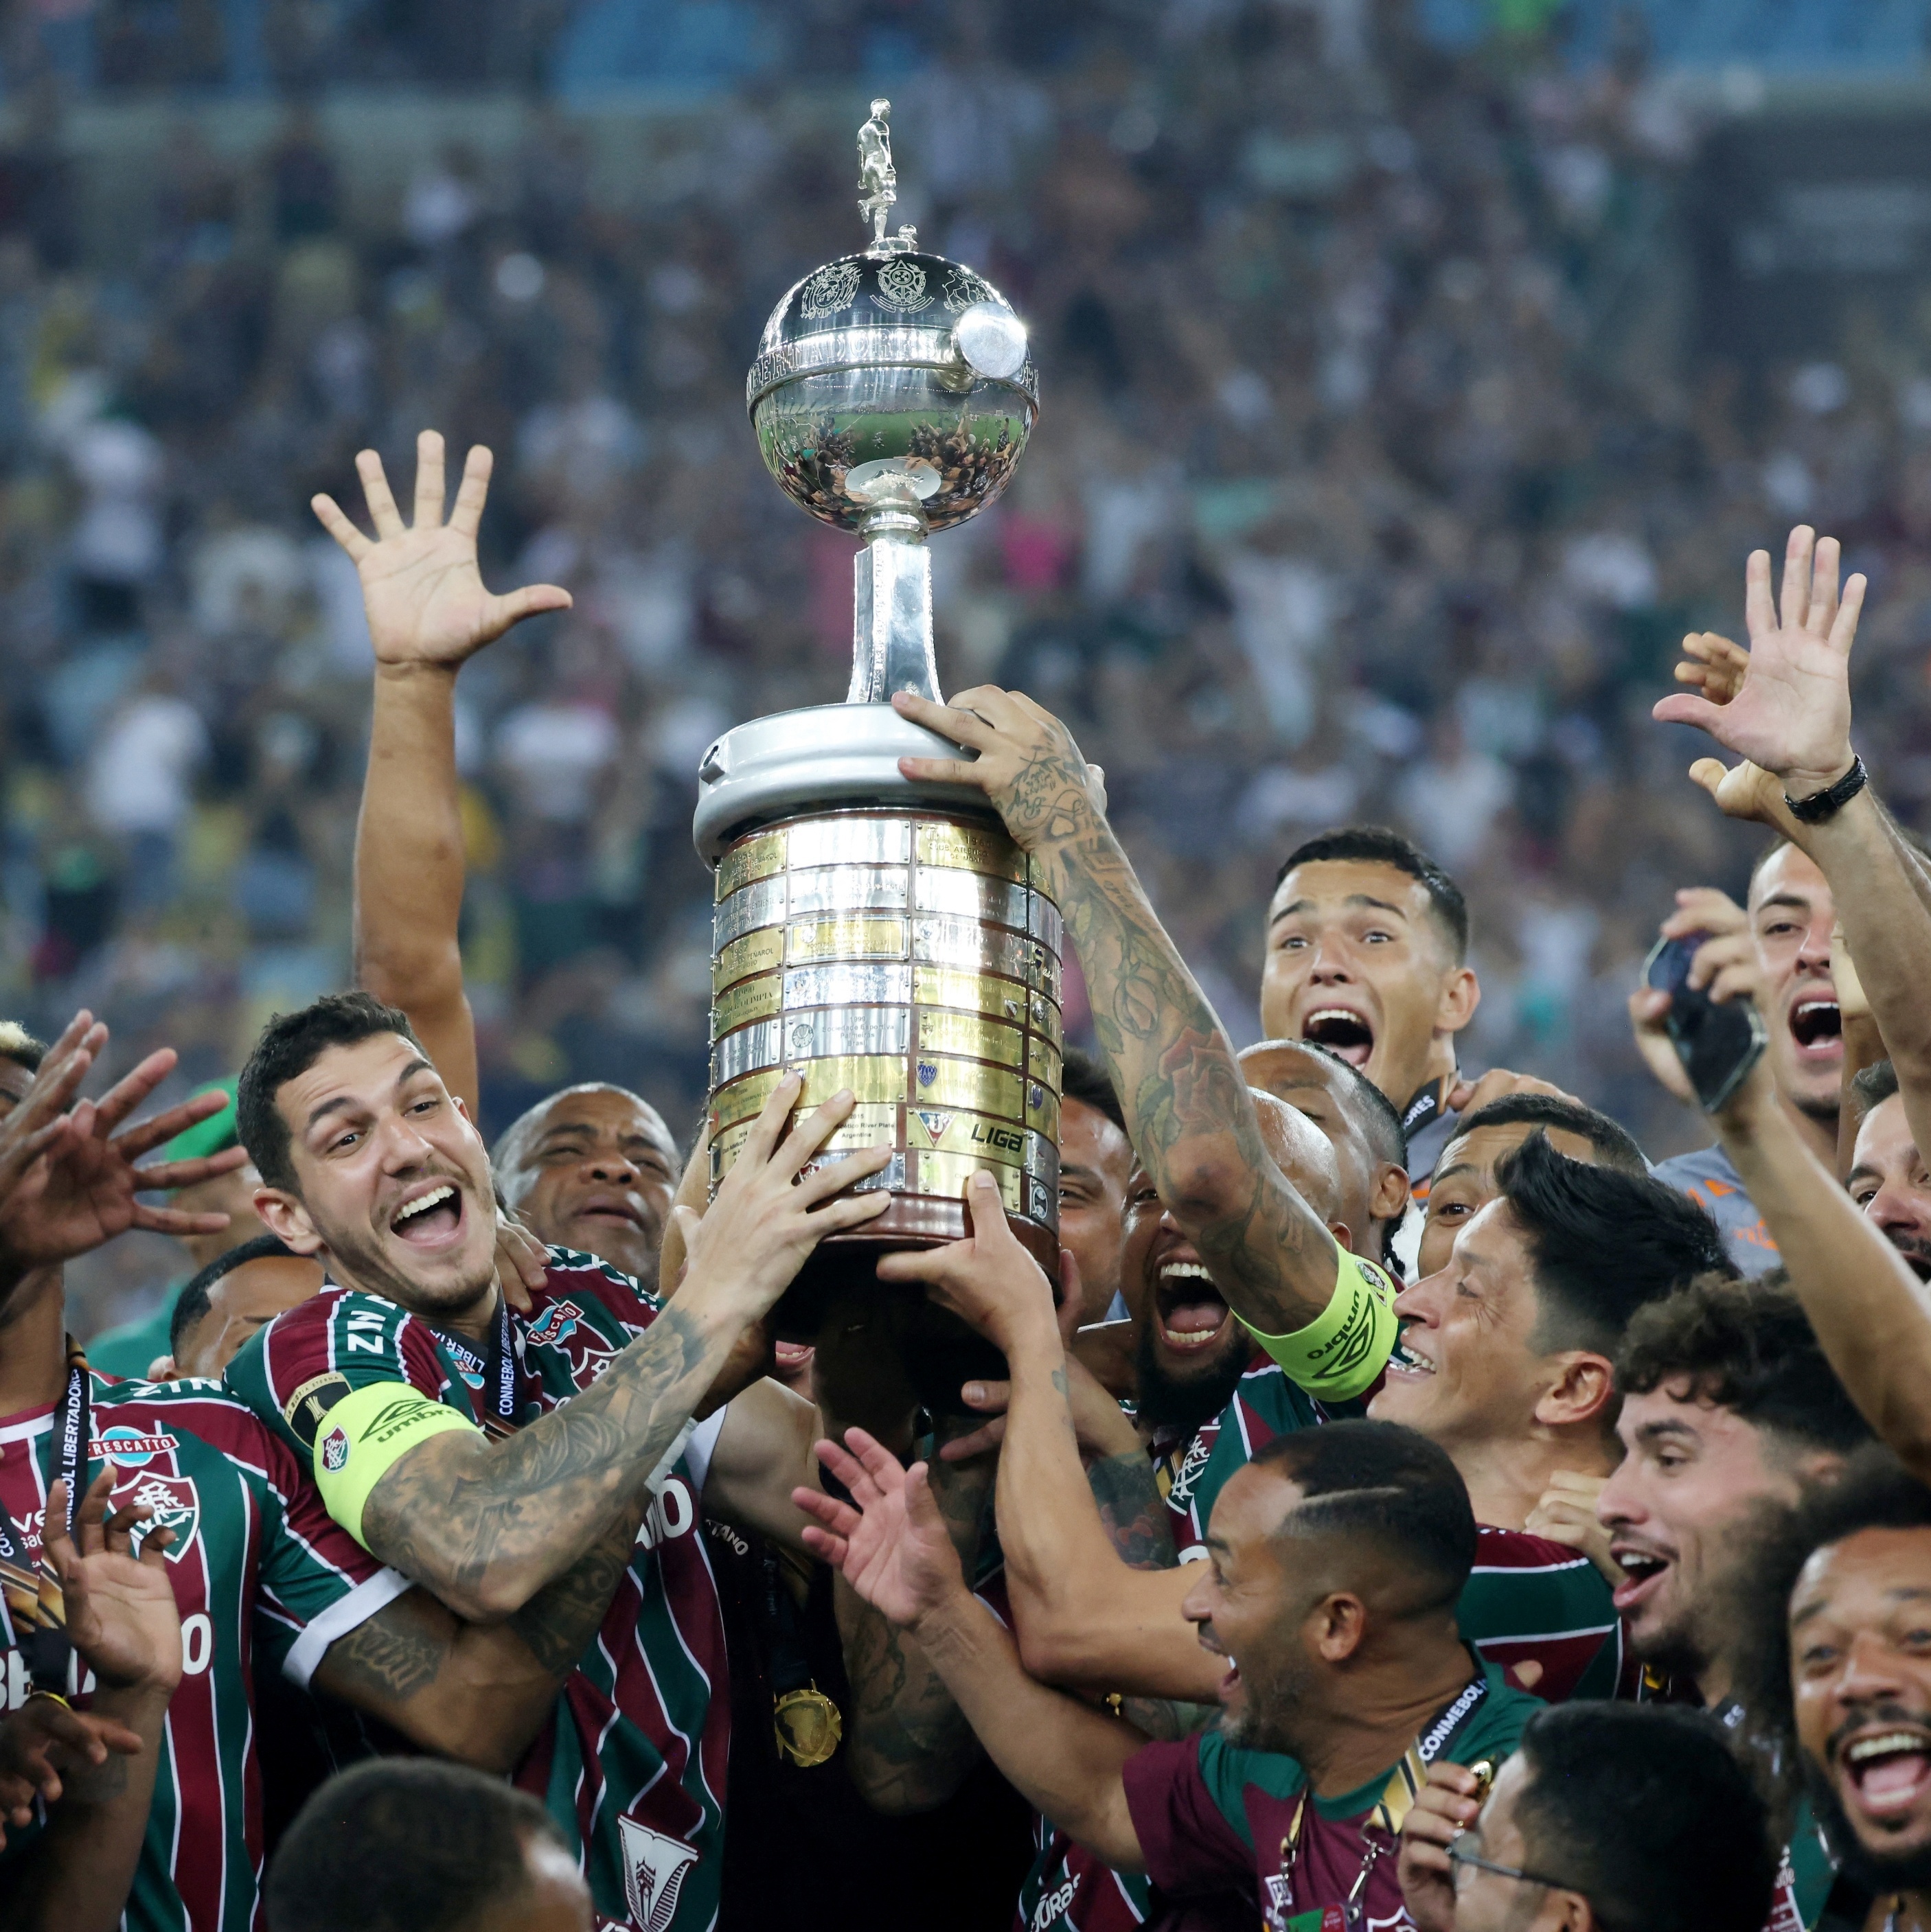 Fluminense Campeao Mundial